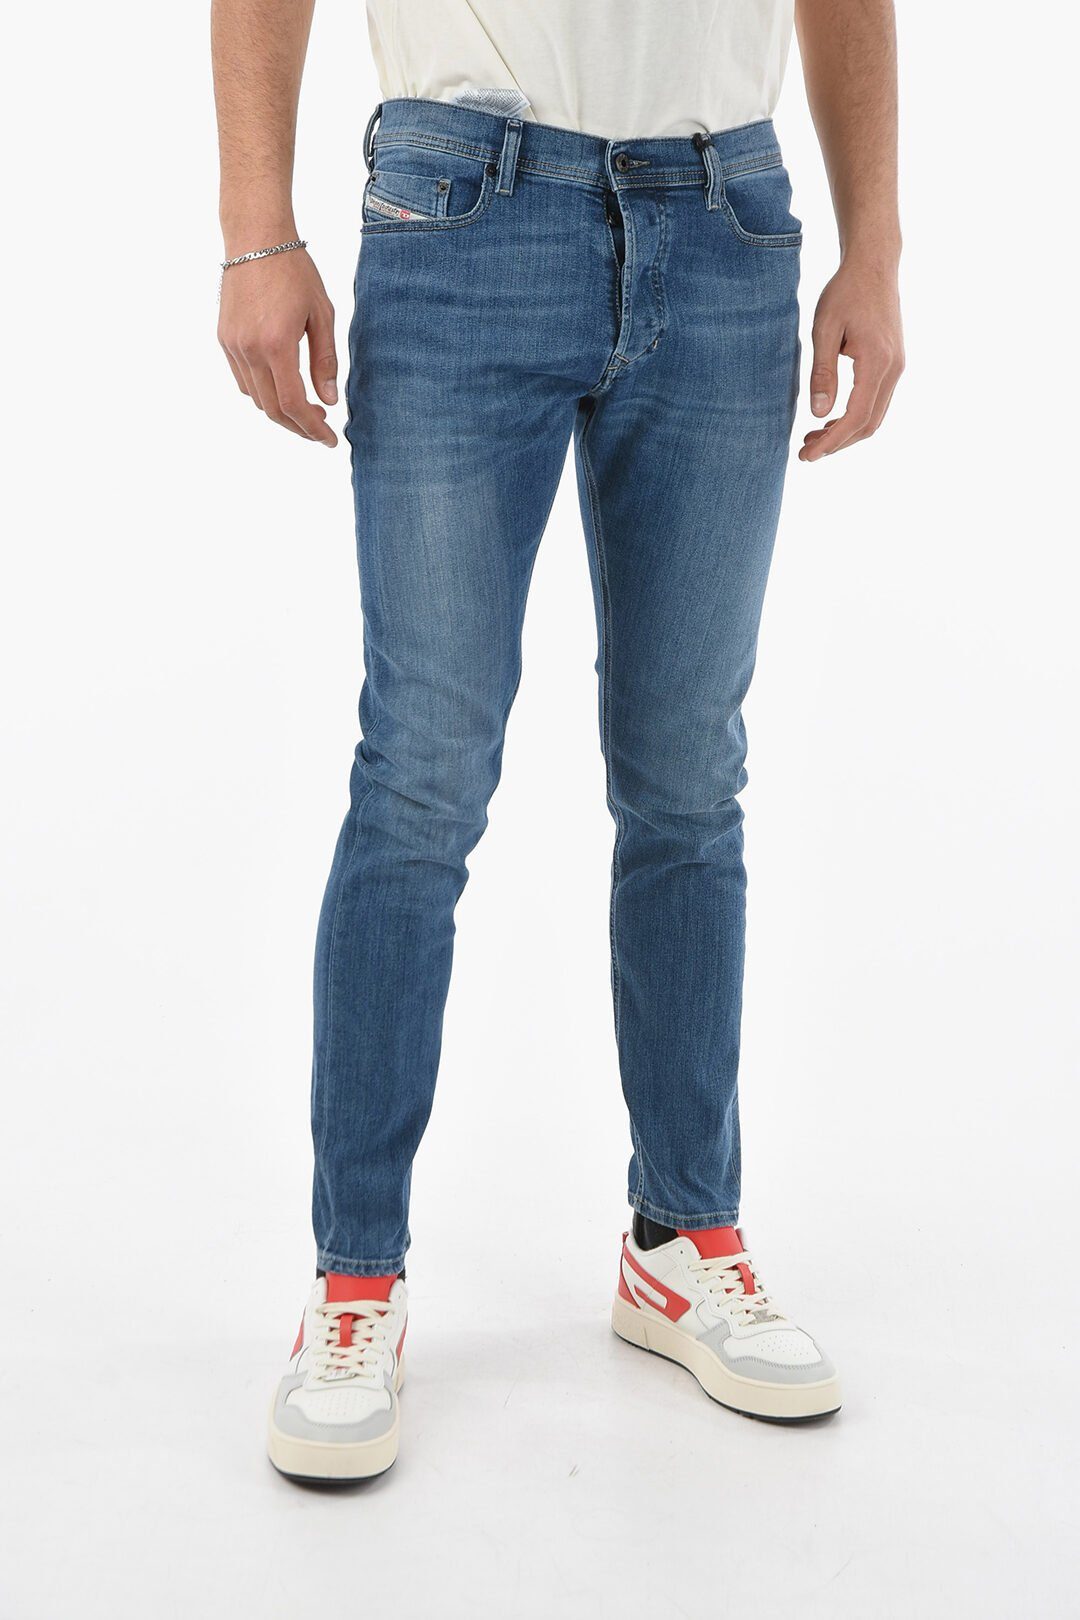 Stretch Slim-fit-Jeans Tepphar Jeans Blau, 5 Diesel Röhrenjeans, Pocket-Style, 0857P Diesel Herren